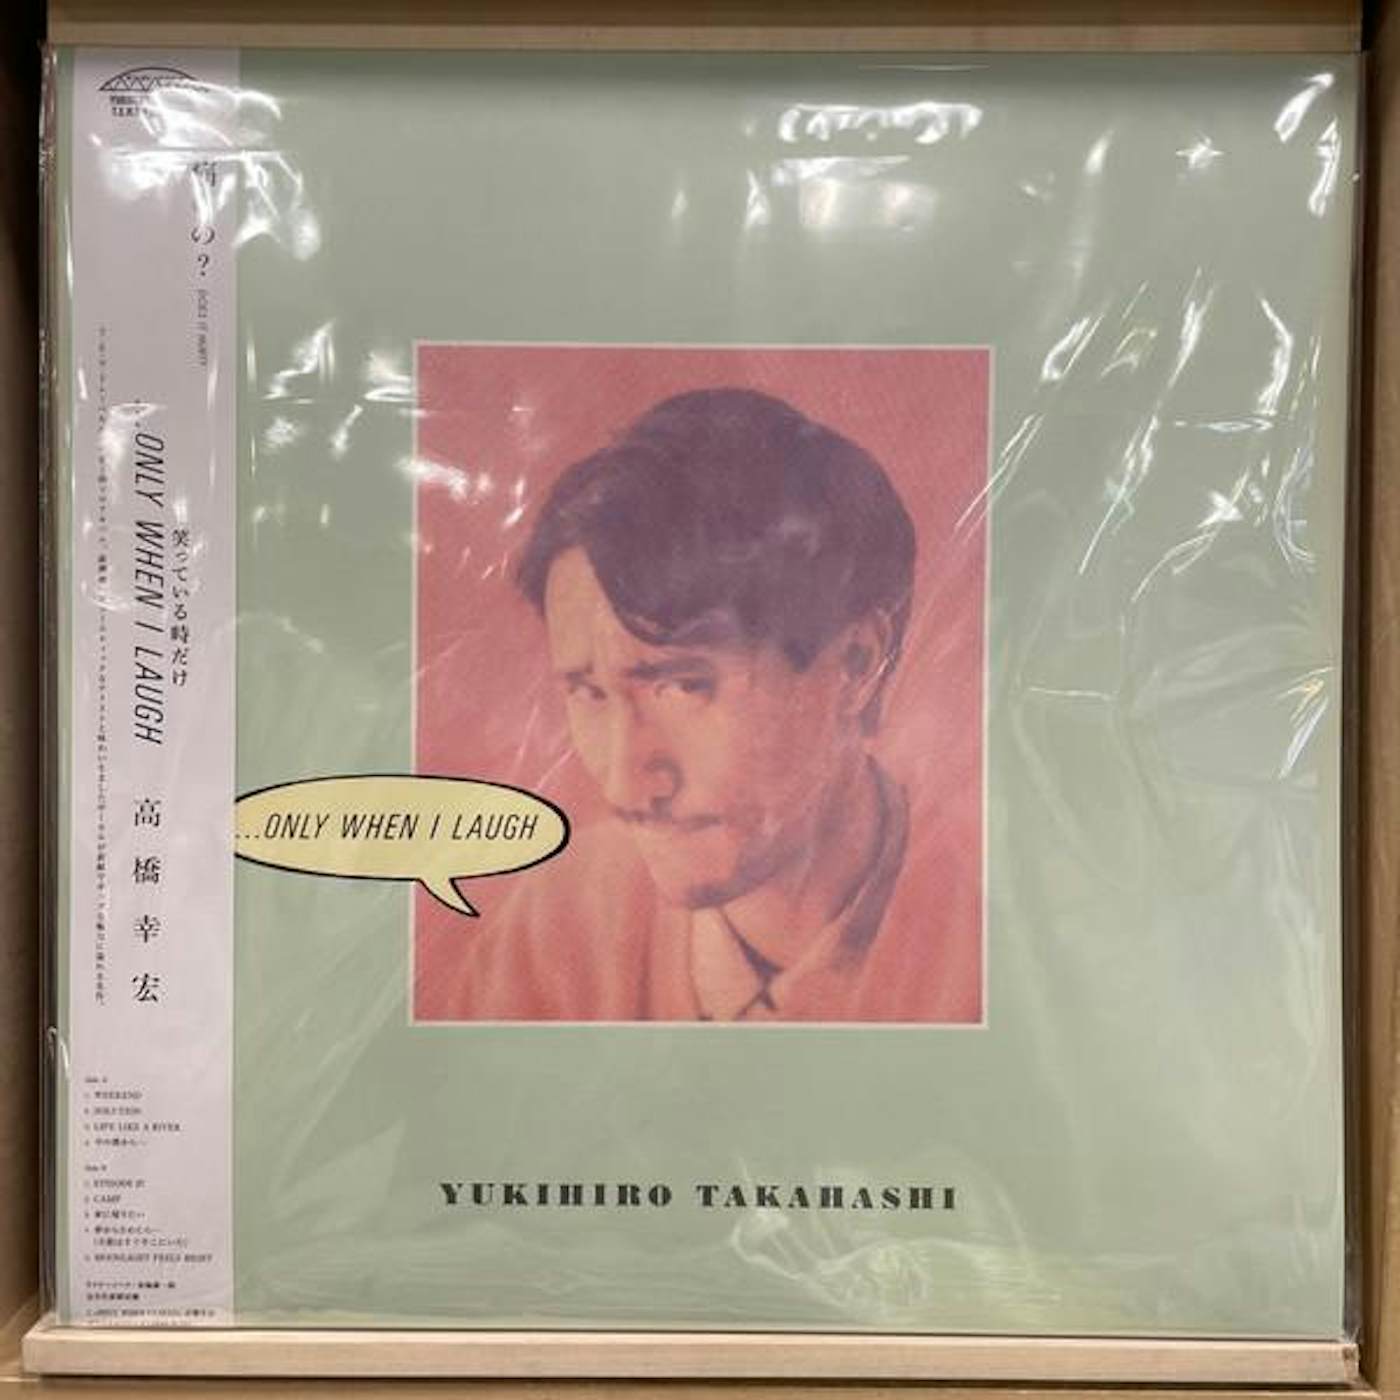 Yukihiro Takahashi ONLY WHEN I LAUGH Vinyl Record